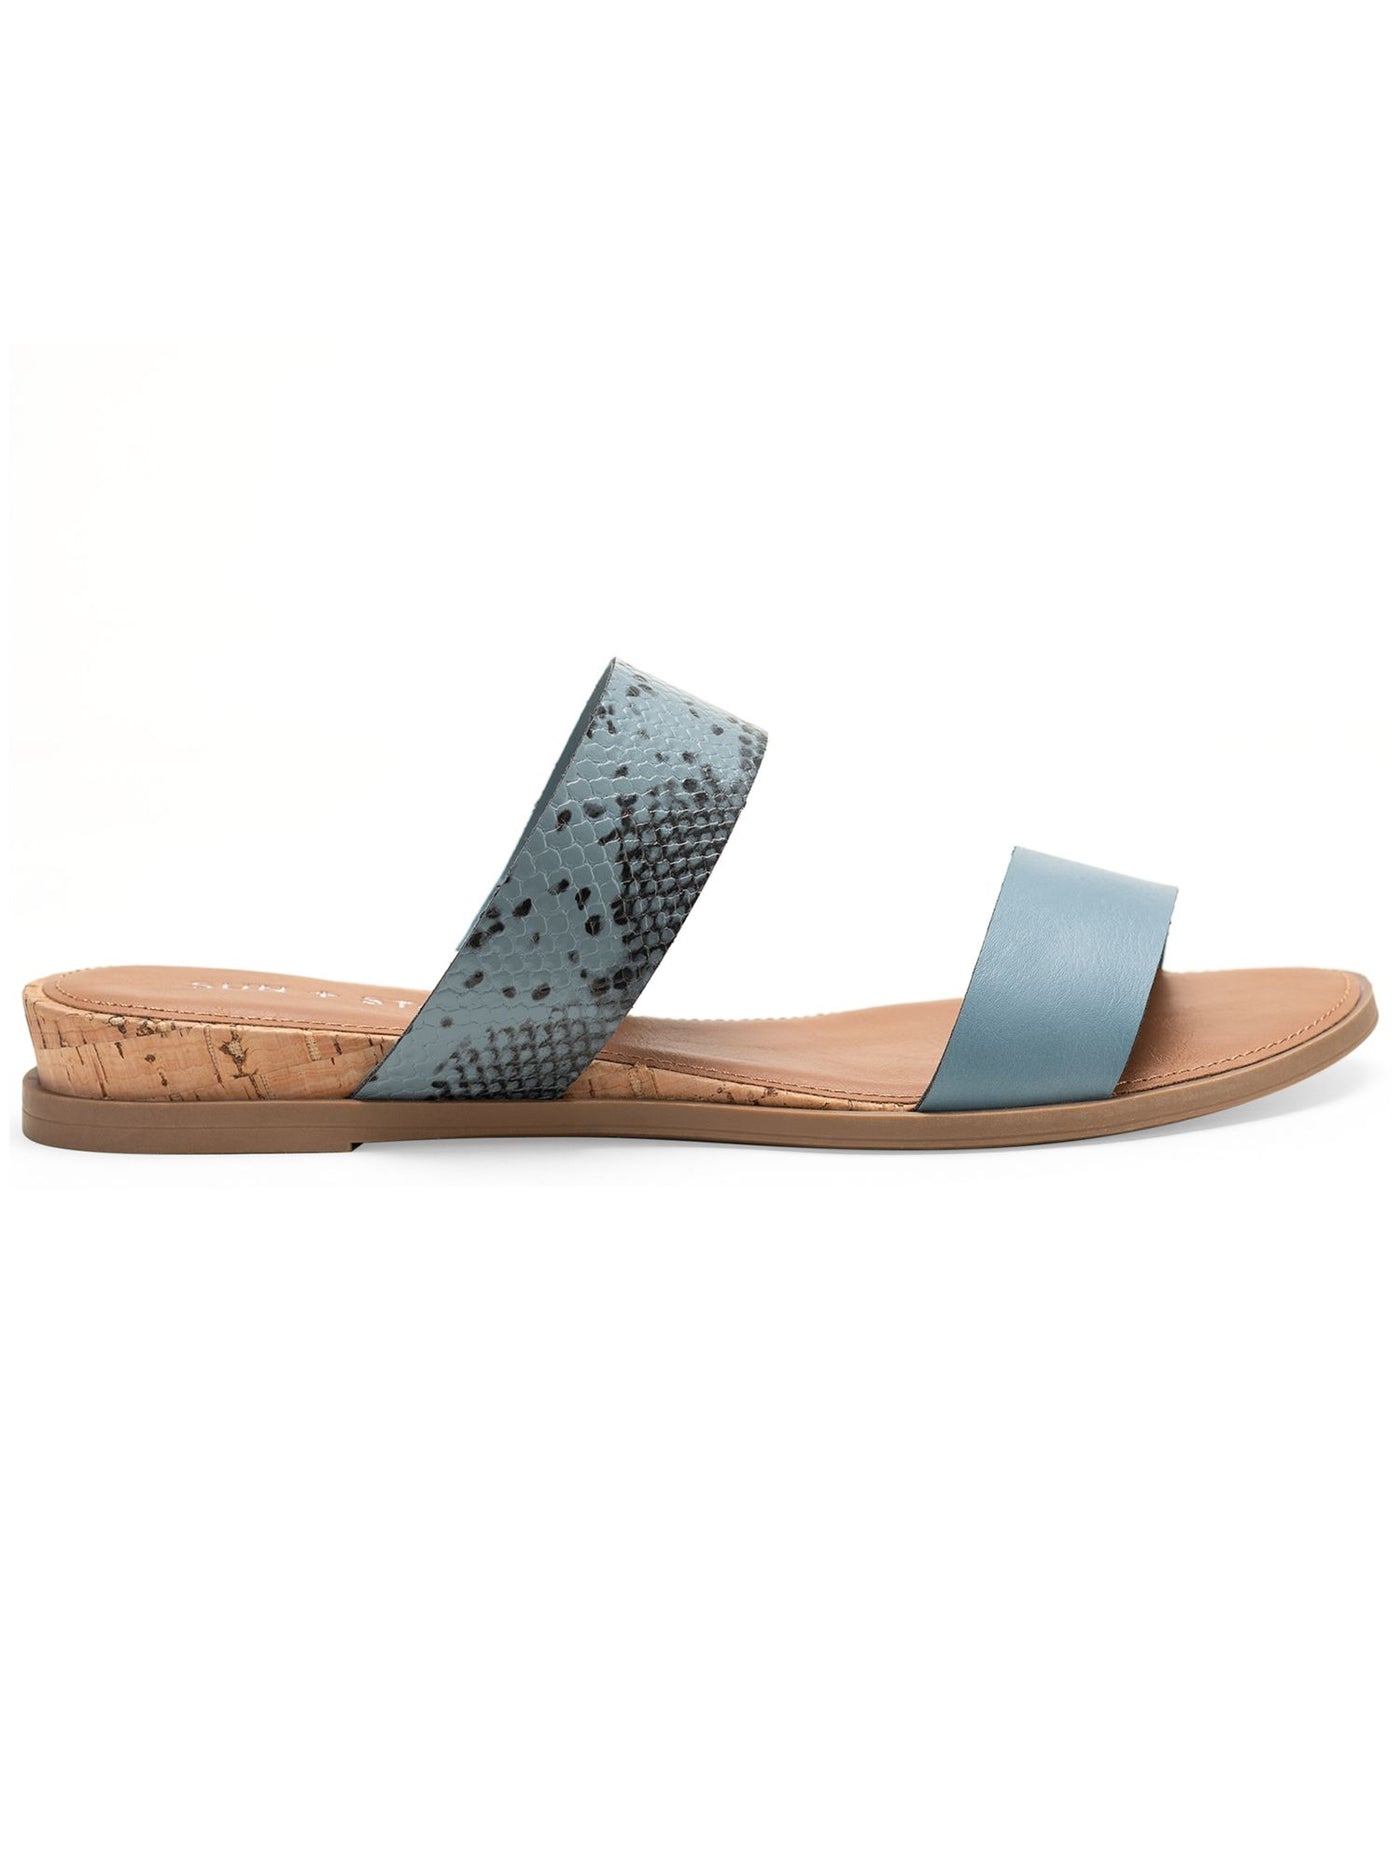 SUN STONE Womens Light Blue Snakeskin Cushioned Slip Resistant Easten Round Toe Wedge Slip On Slide Sandals Shoes 7.5 W